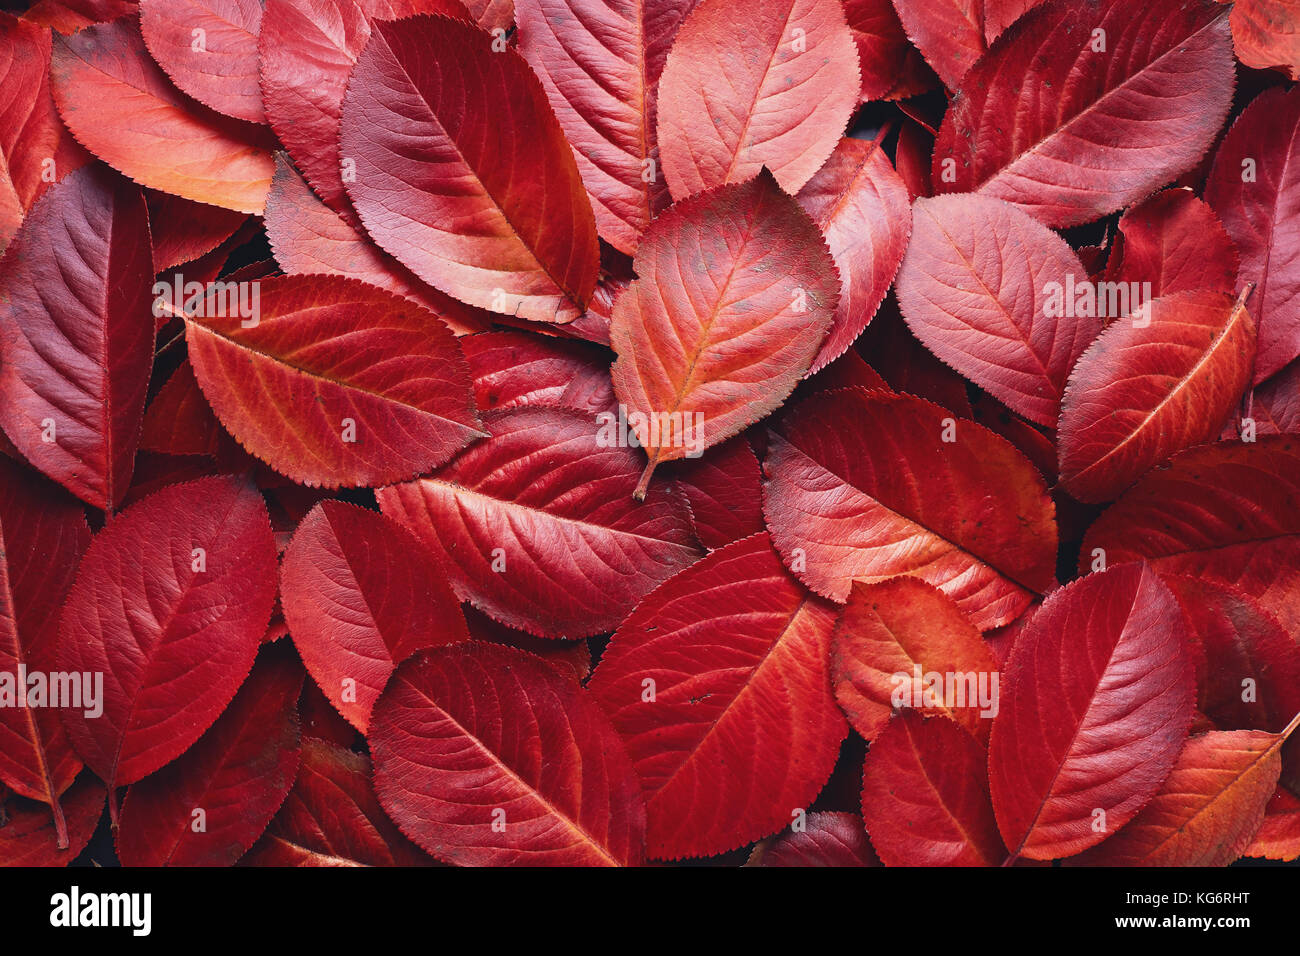 Nahaufnahme der roten Aronia Herbst Blätter Hintergrund Textur. Roter Herbst Blätter Hintergrund. Aronia melanocarpa (Johannisbeere) Herbstblätter. Stockfoto